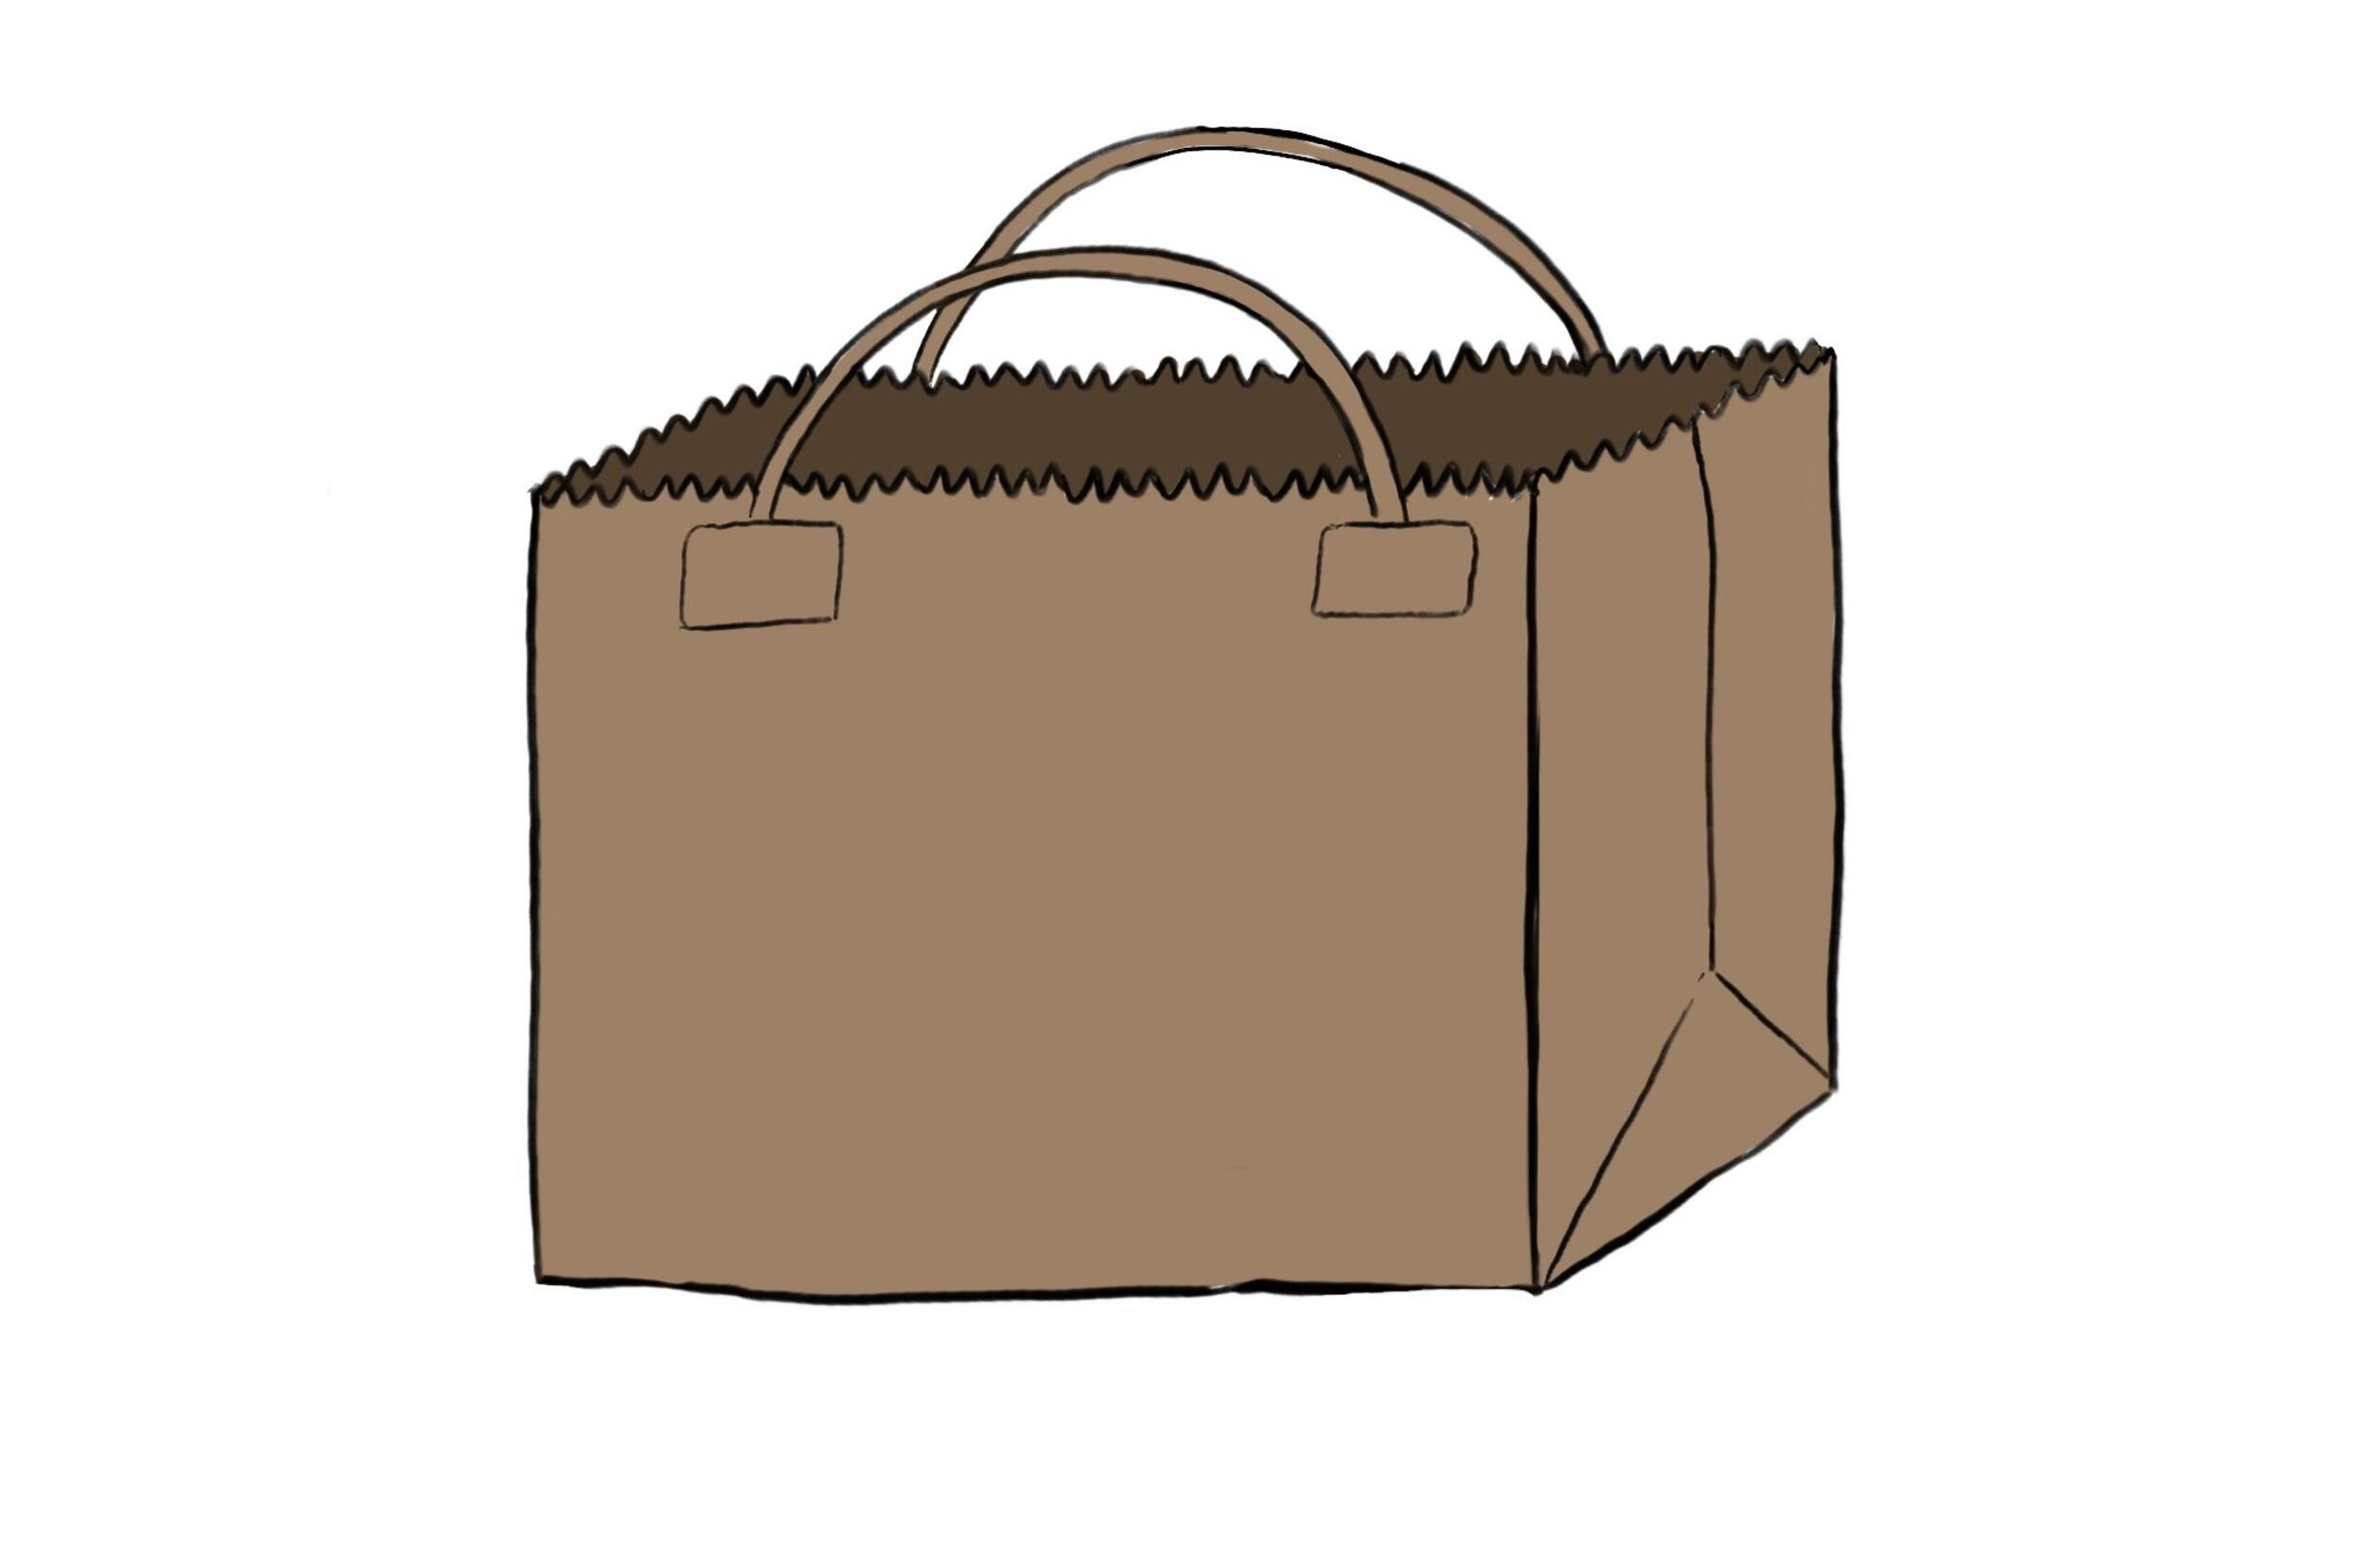 Illustration of a brown paper bag